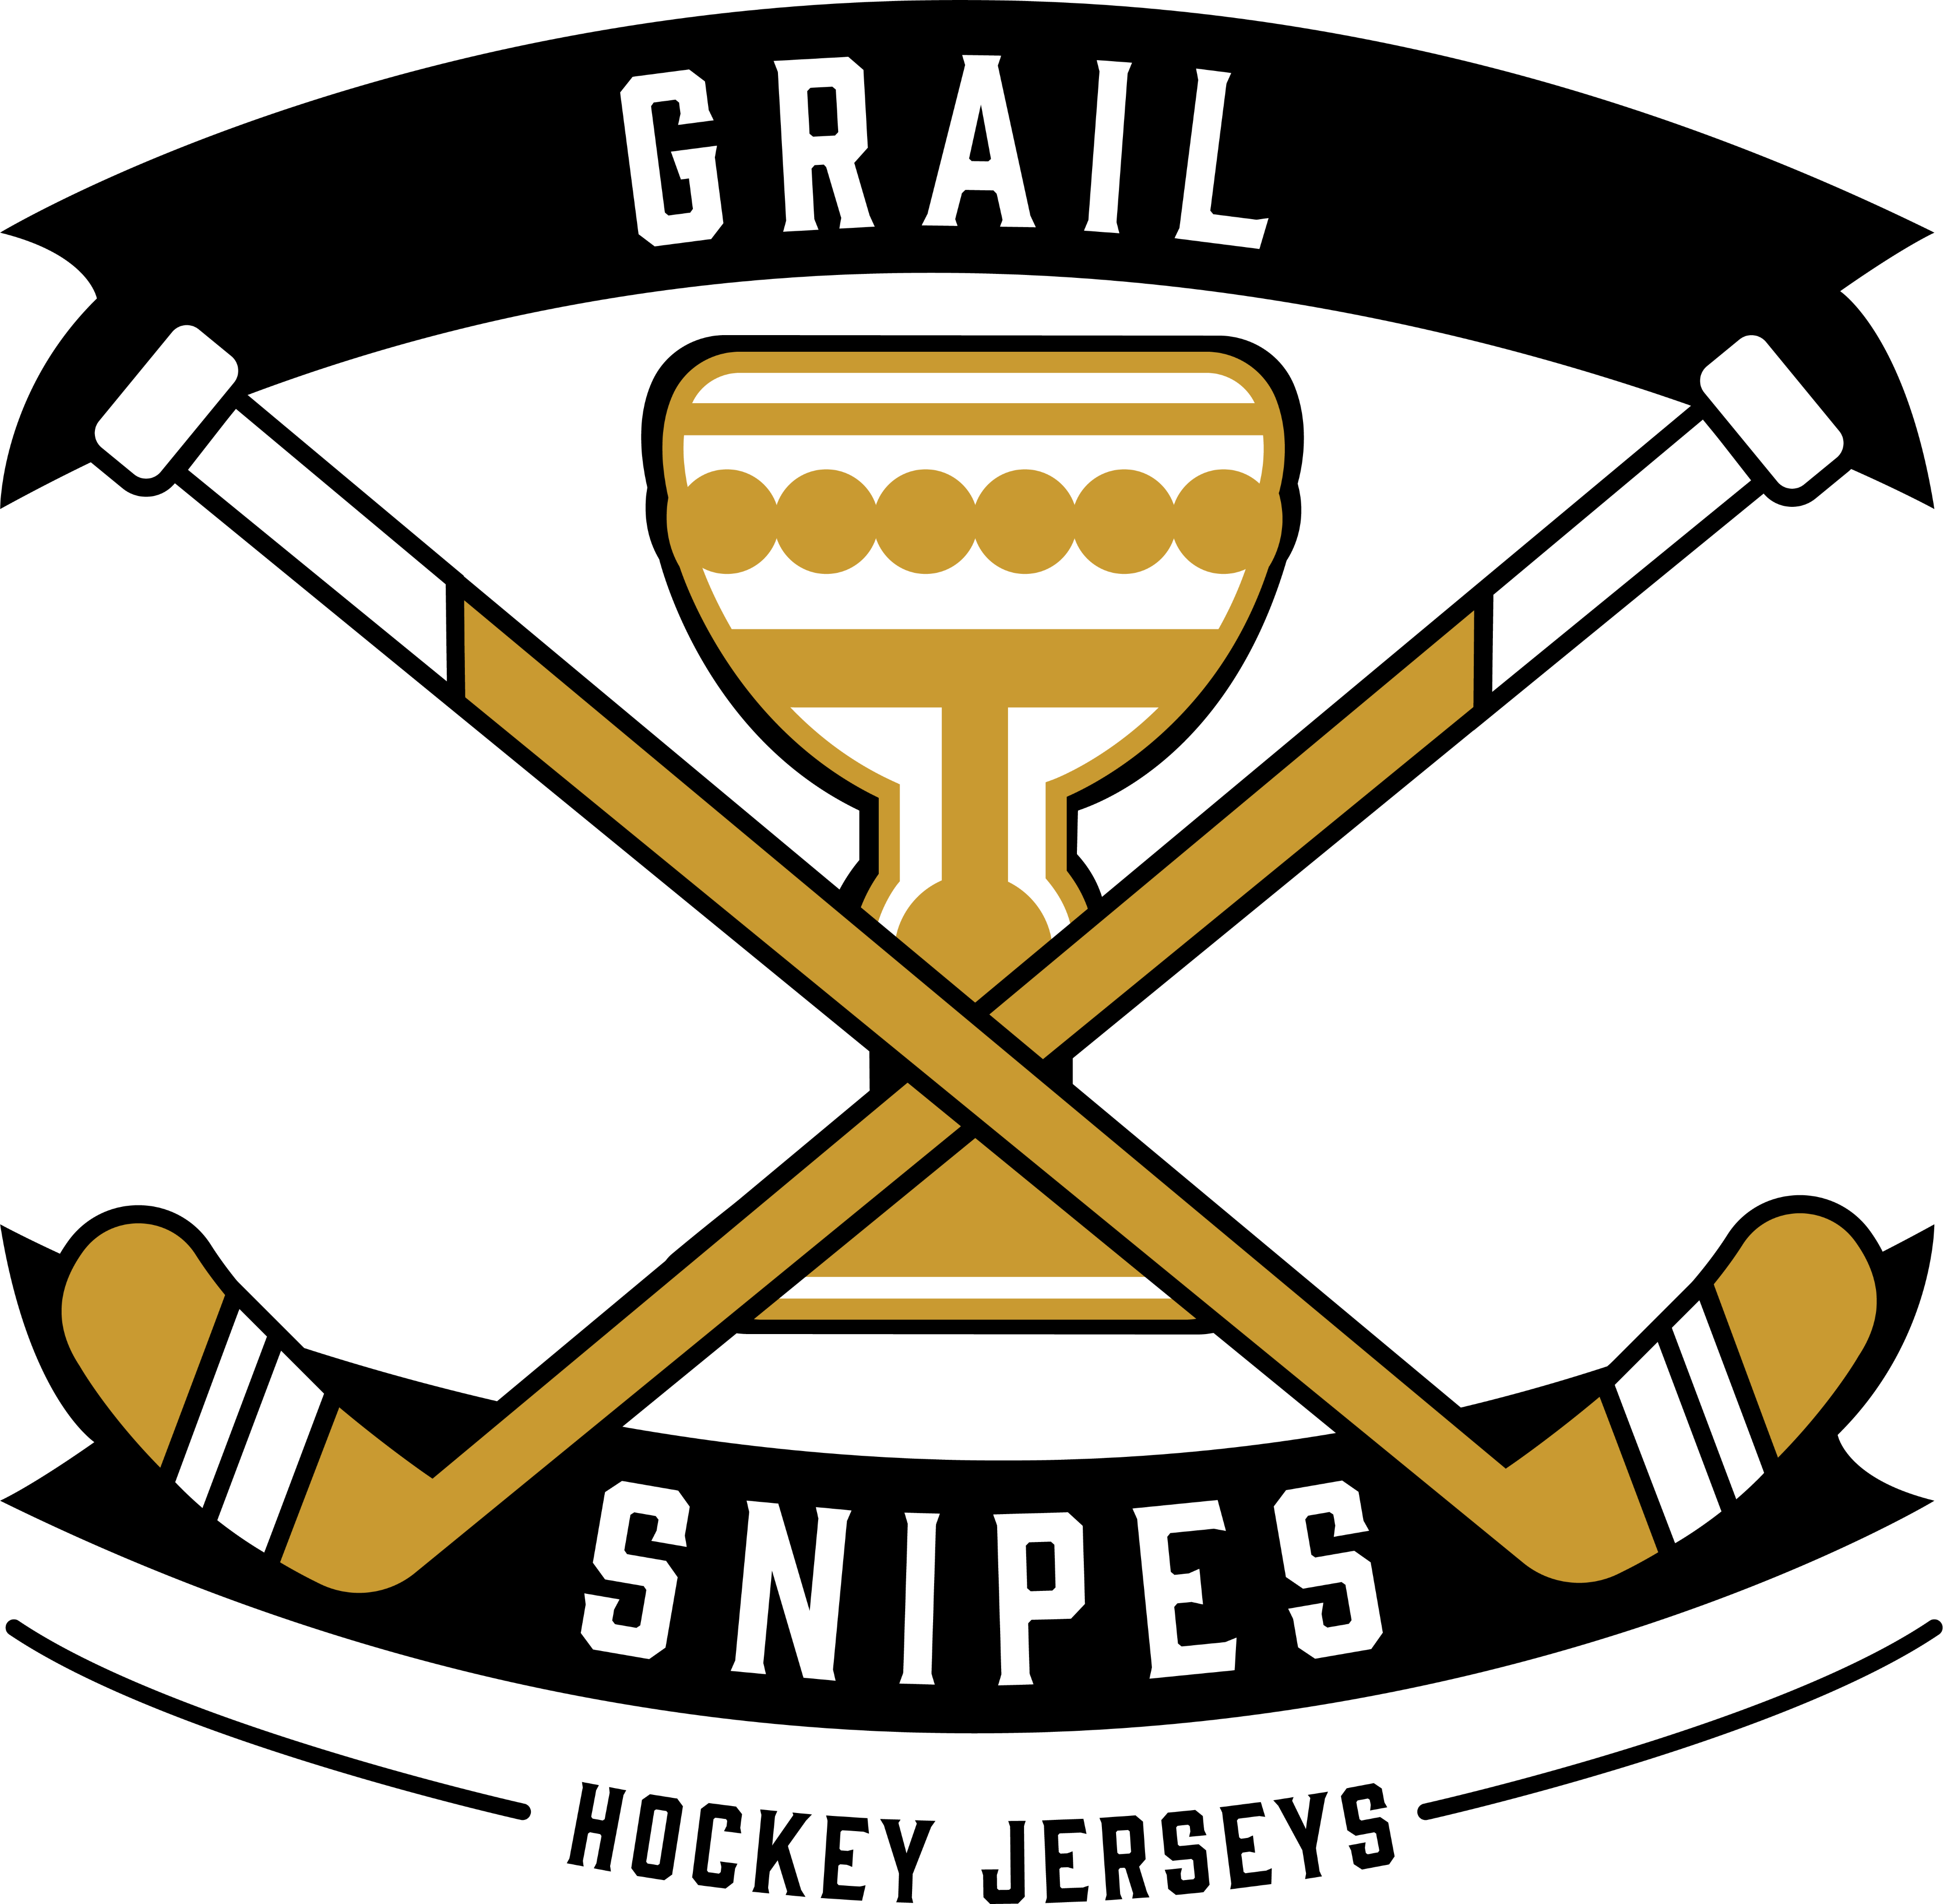 Hockey Jerseys – Grail Snipes